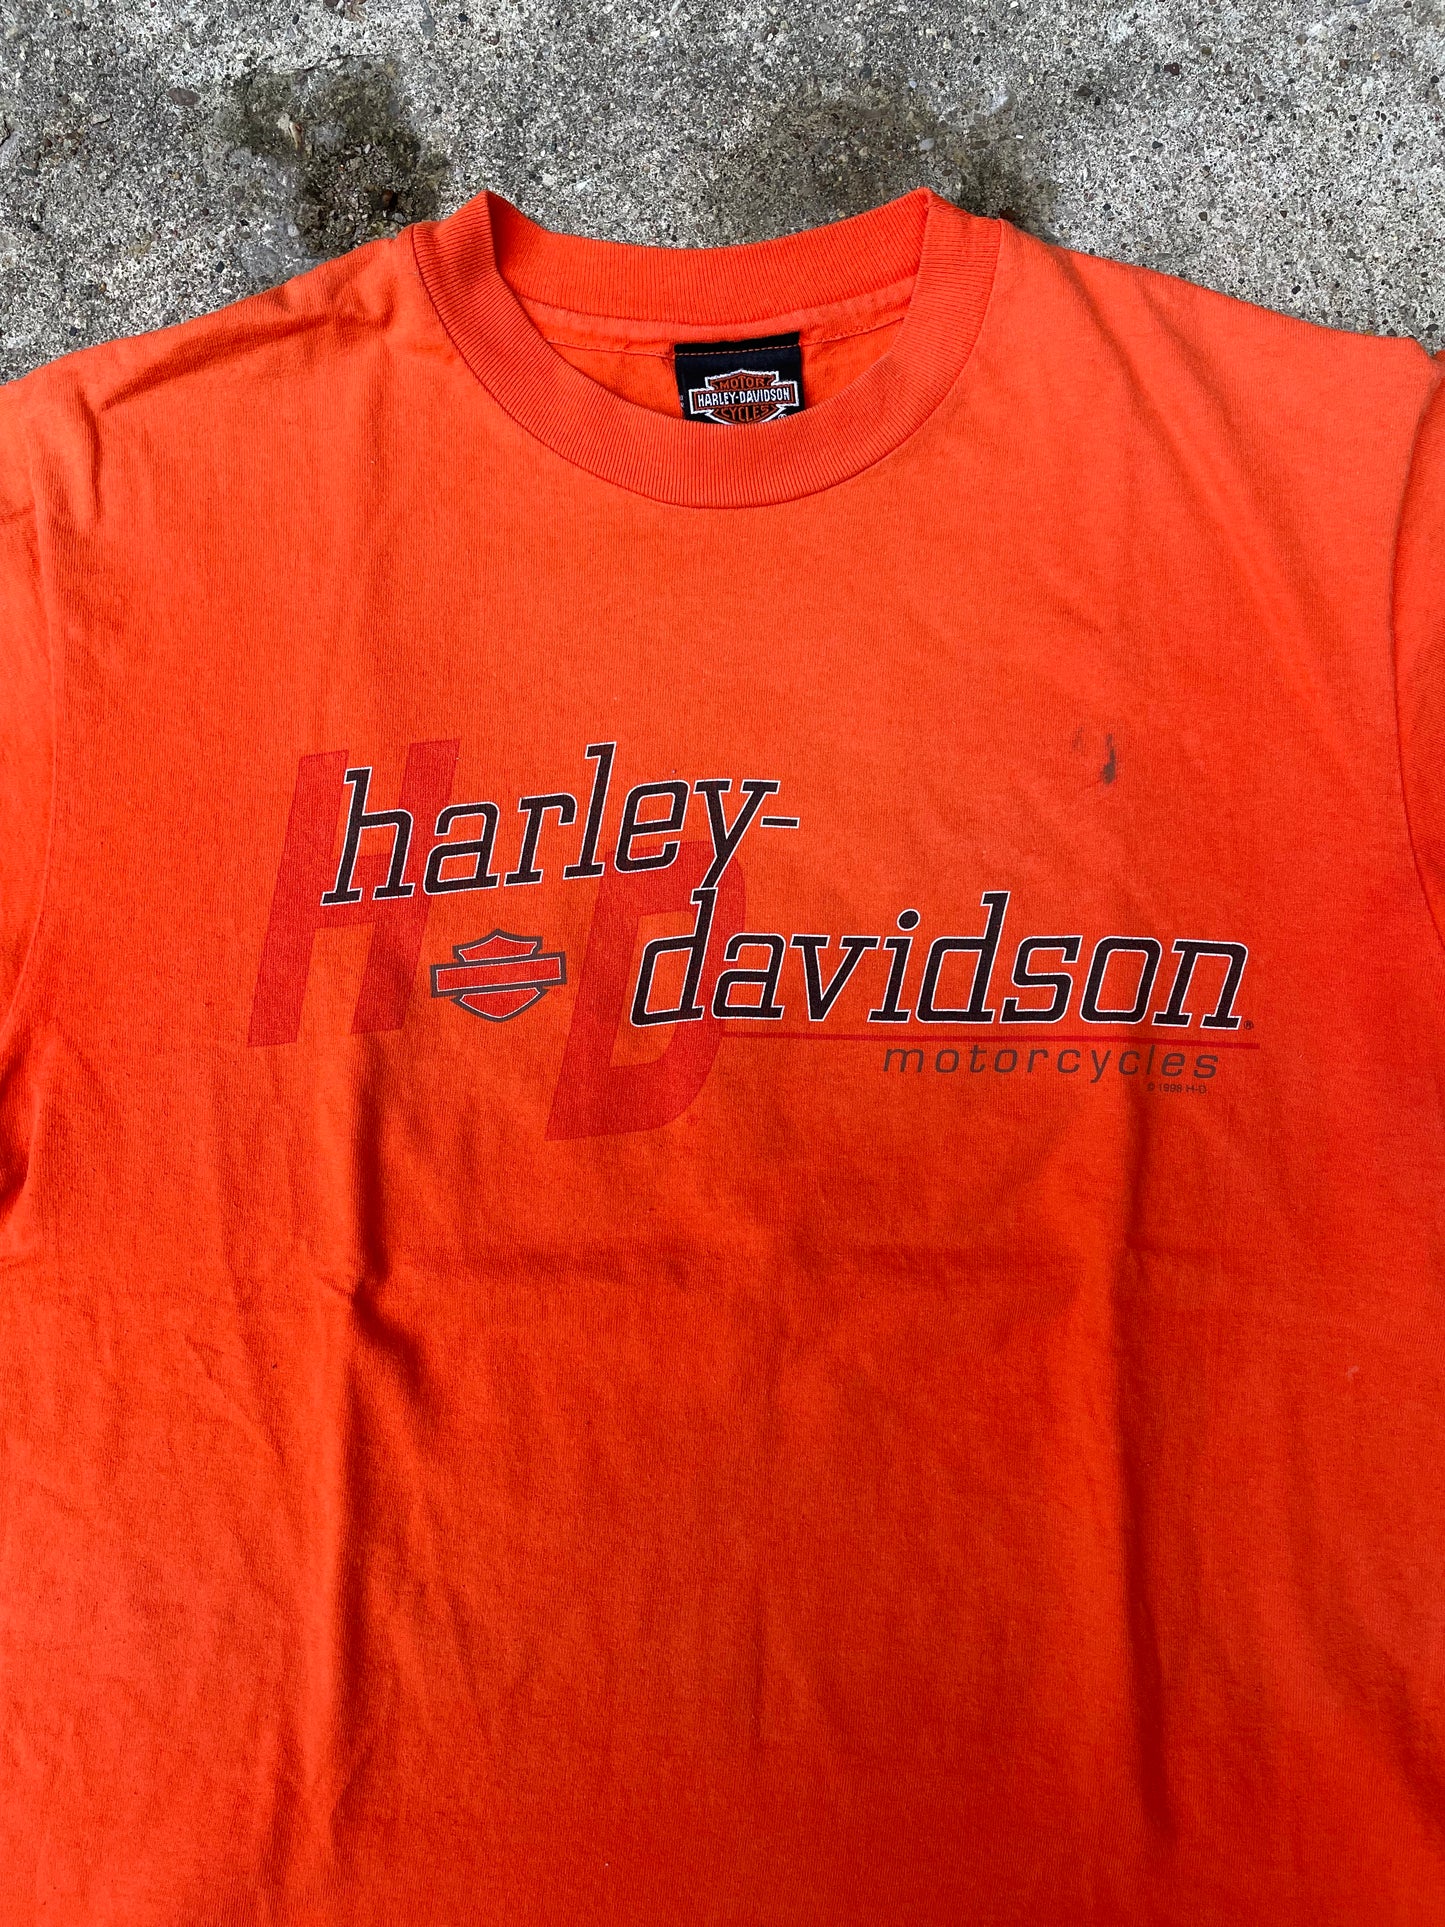 1998 Harley Davidson Motorcycles T-Shirt - L